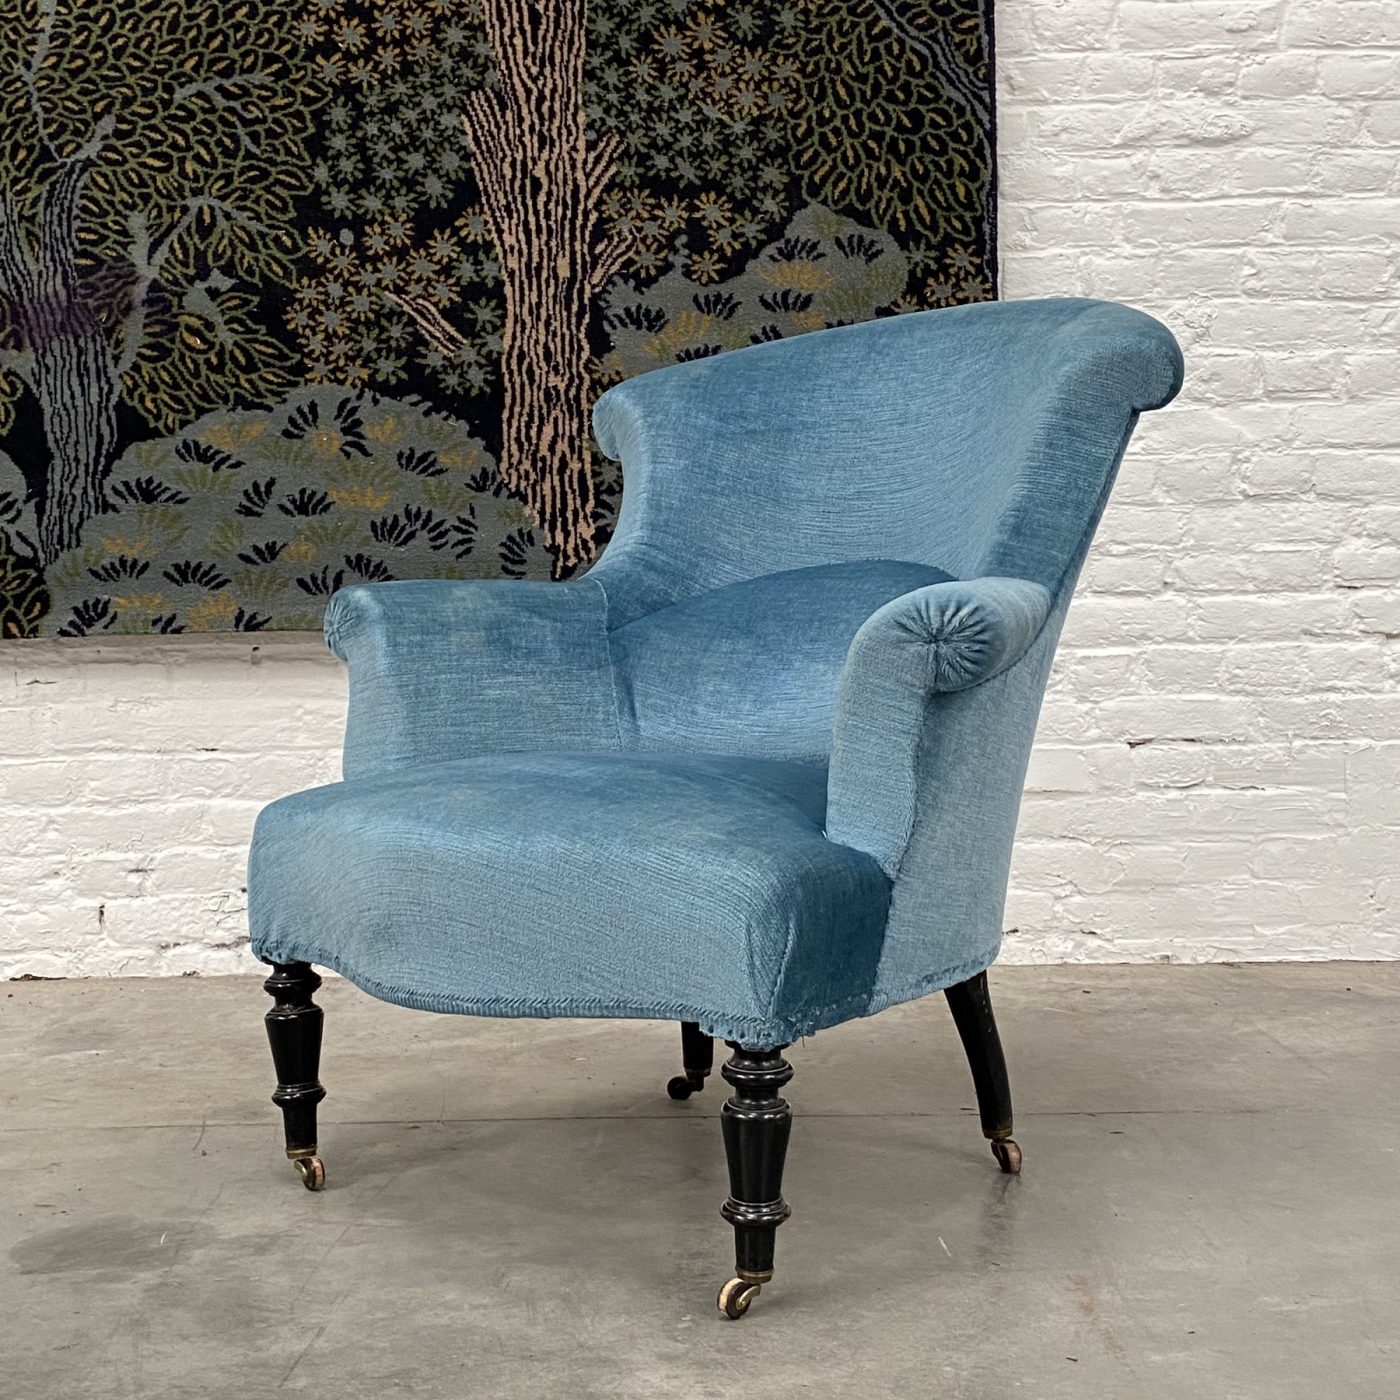 objet-vagabond-napoleon3-armchairs0007